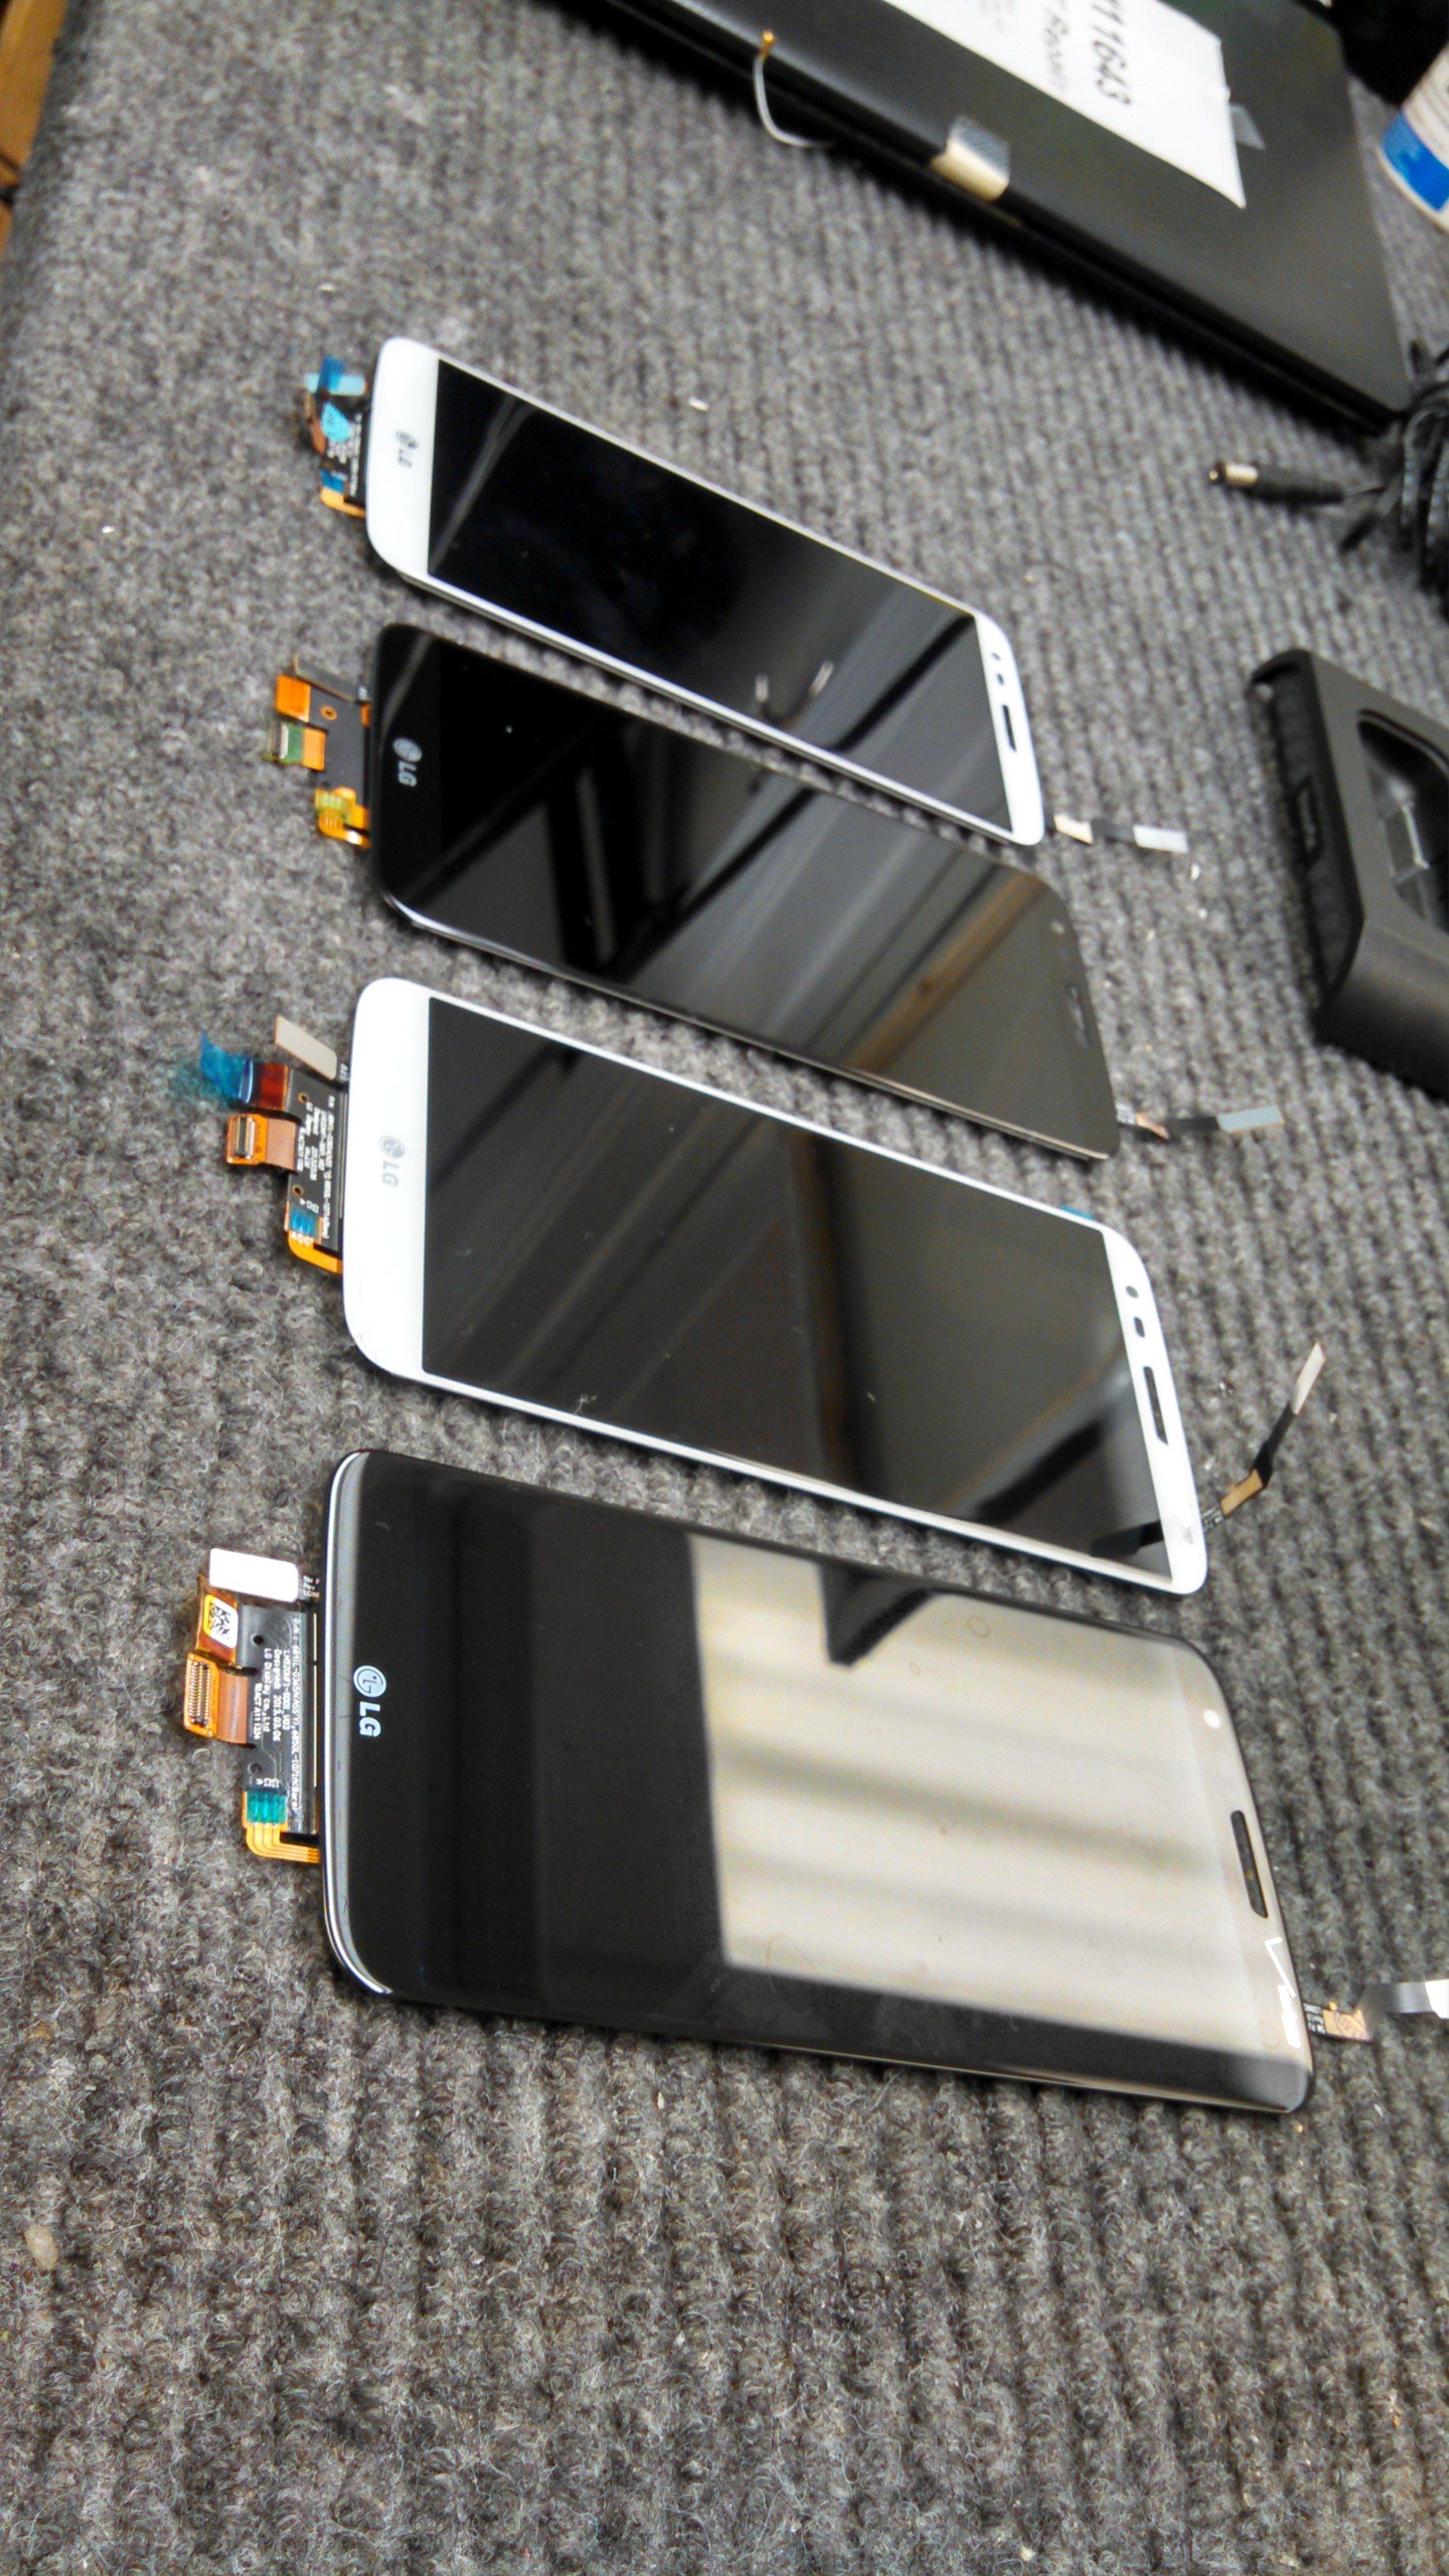 LG G2 model cracked screen repairs